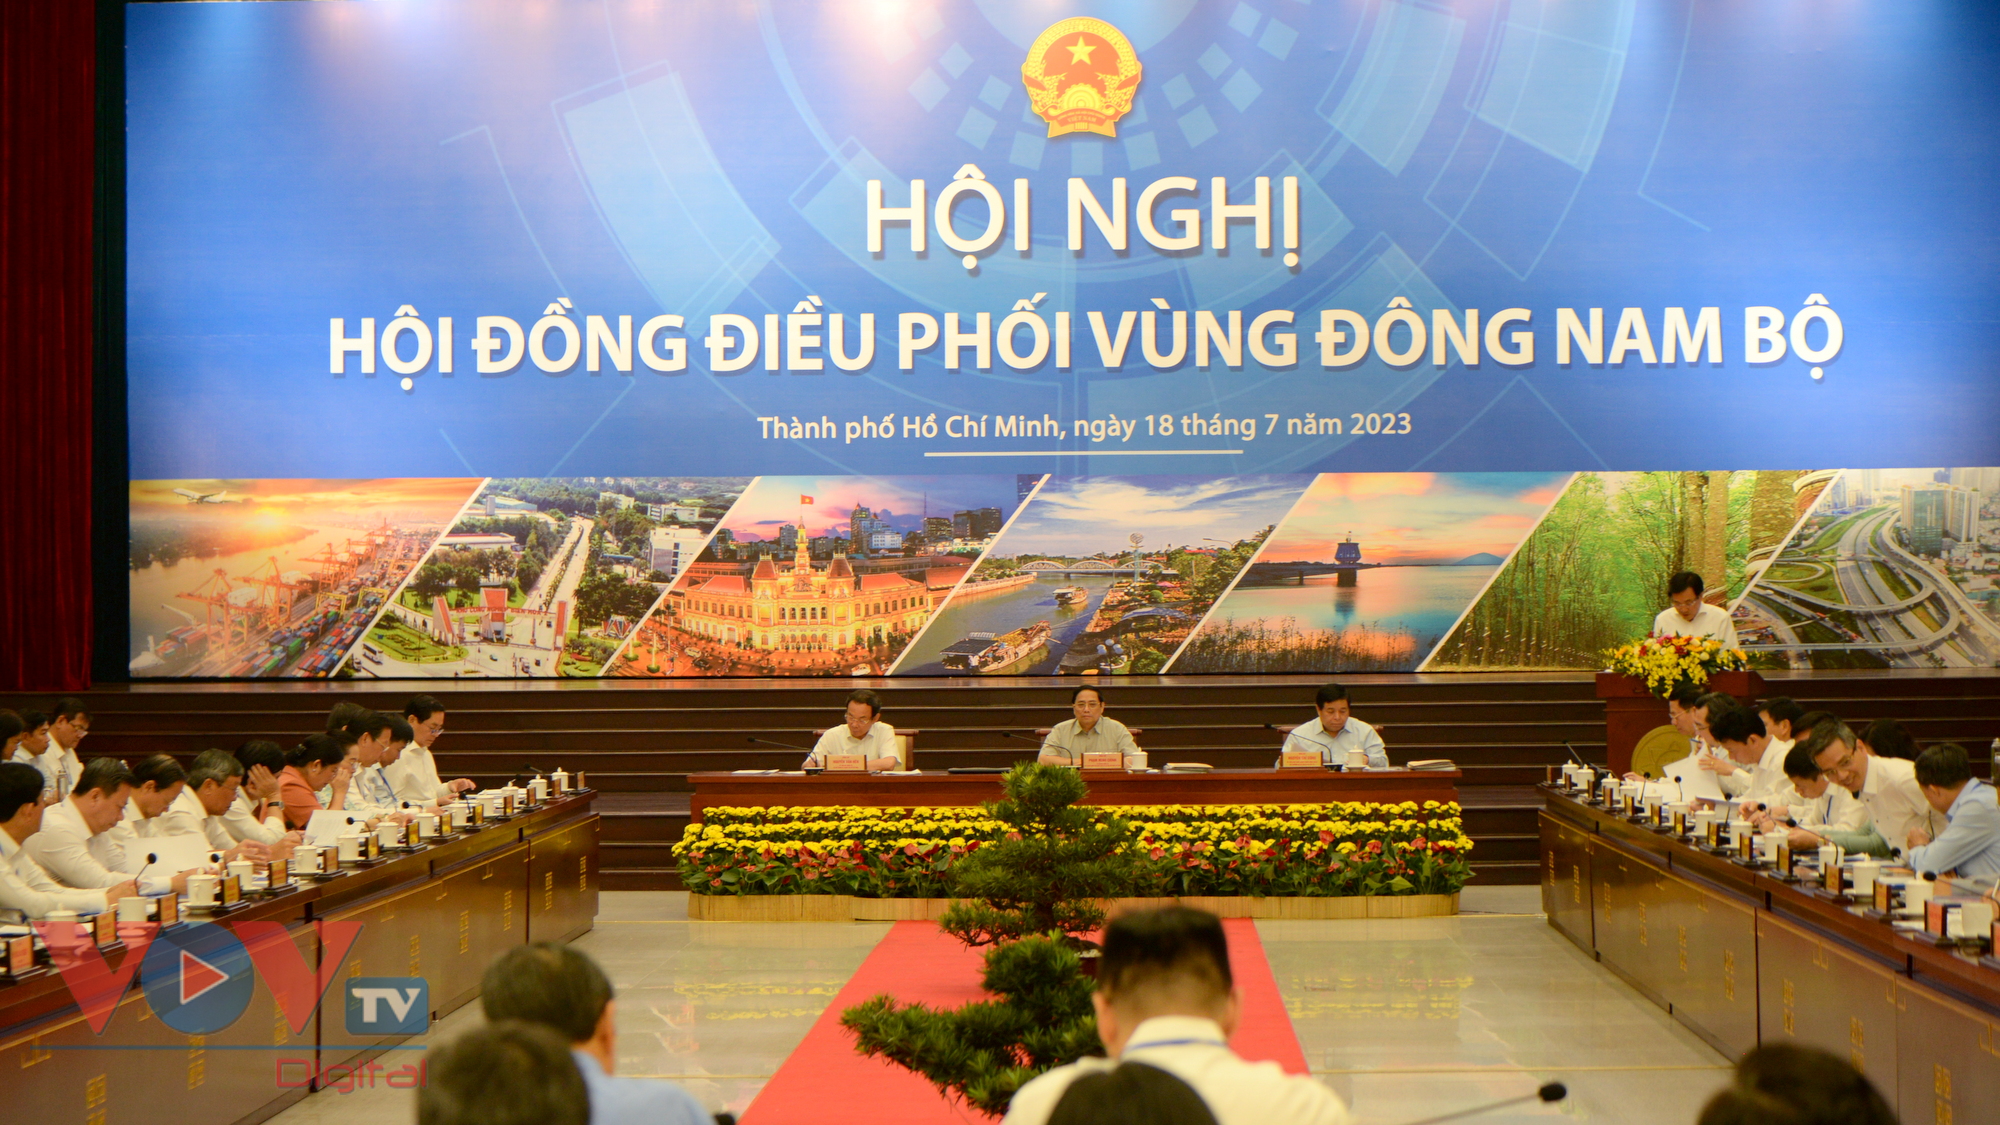 Thủ tướng Phạm Minh Chính chủ trì Hội nghị Hội đồng điều phối vùng Đông Nam bộ - Ảnh 2.